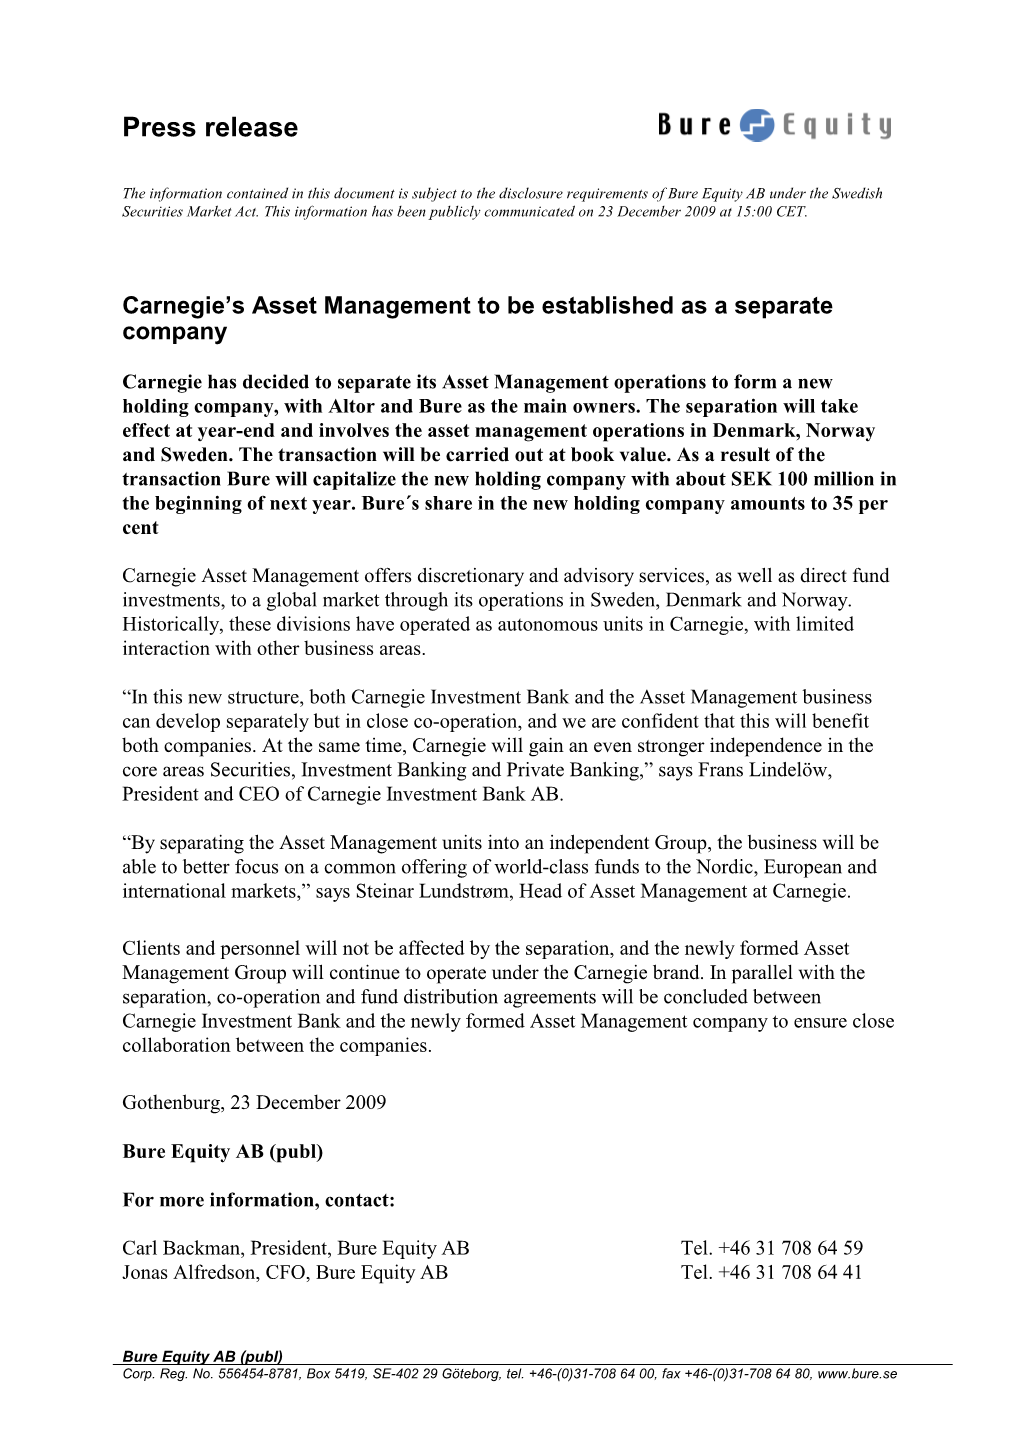 091223 Asset Management Separation Carnegie